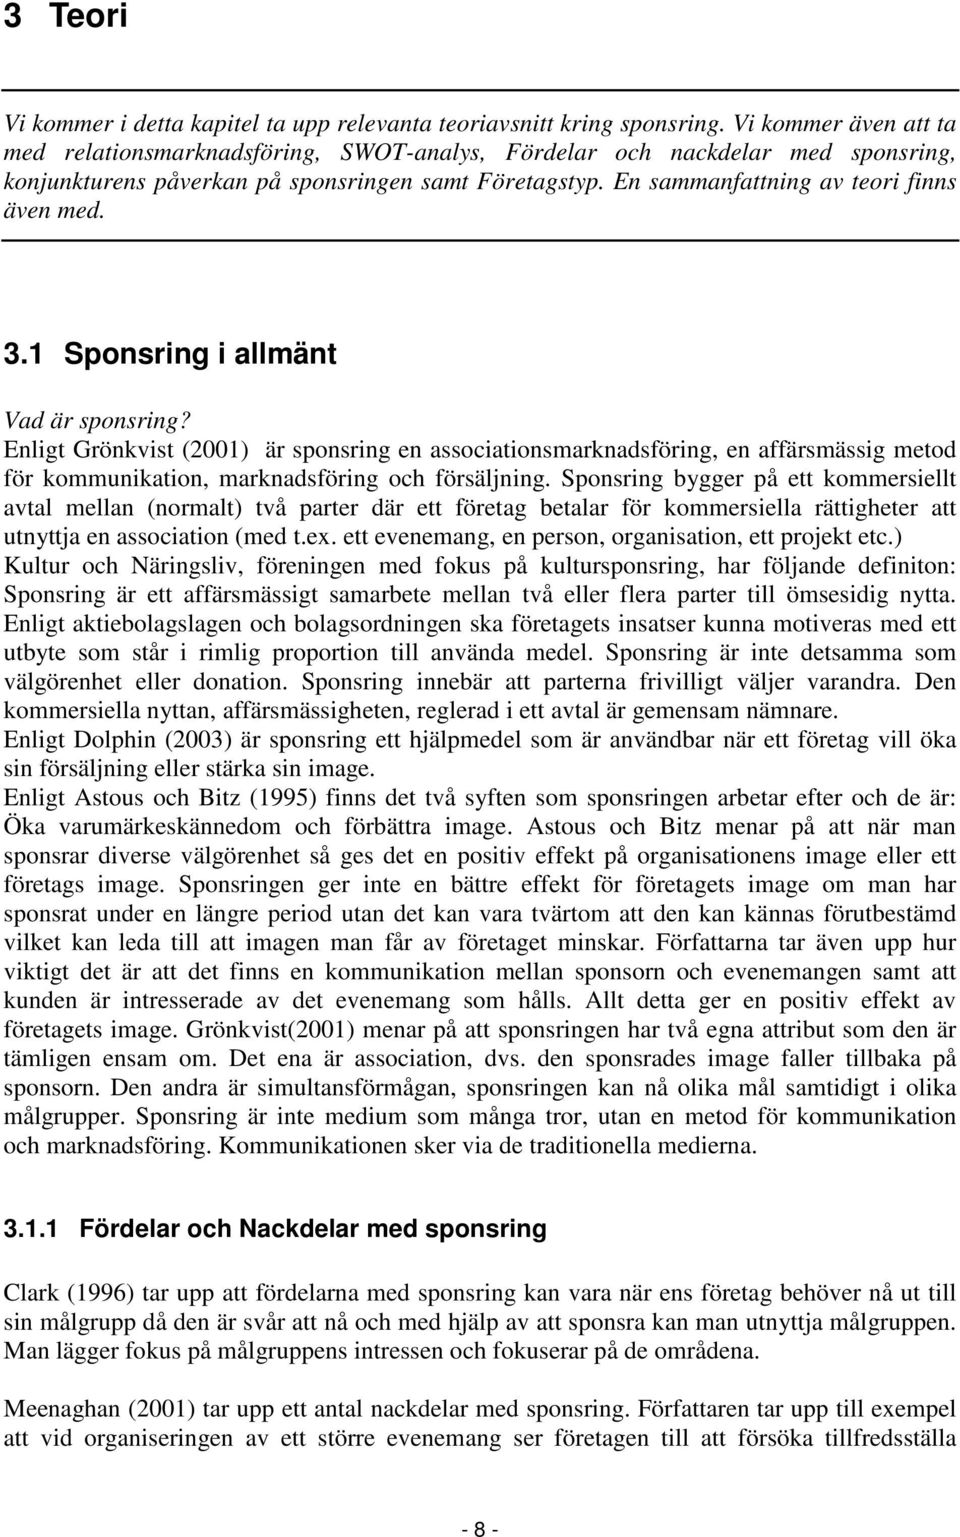 3.1 Sponsring i allmänt Vad är sponsring? Enligt Grönkvist (2001) är sponsring en associationsmarknadsföring, en affärsmässig metod för kommunikation, marknadsföring och försäljning.